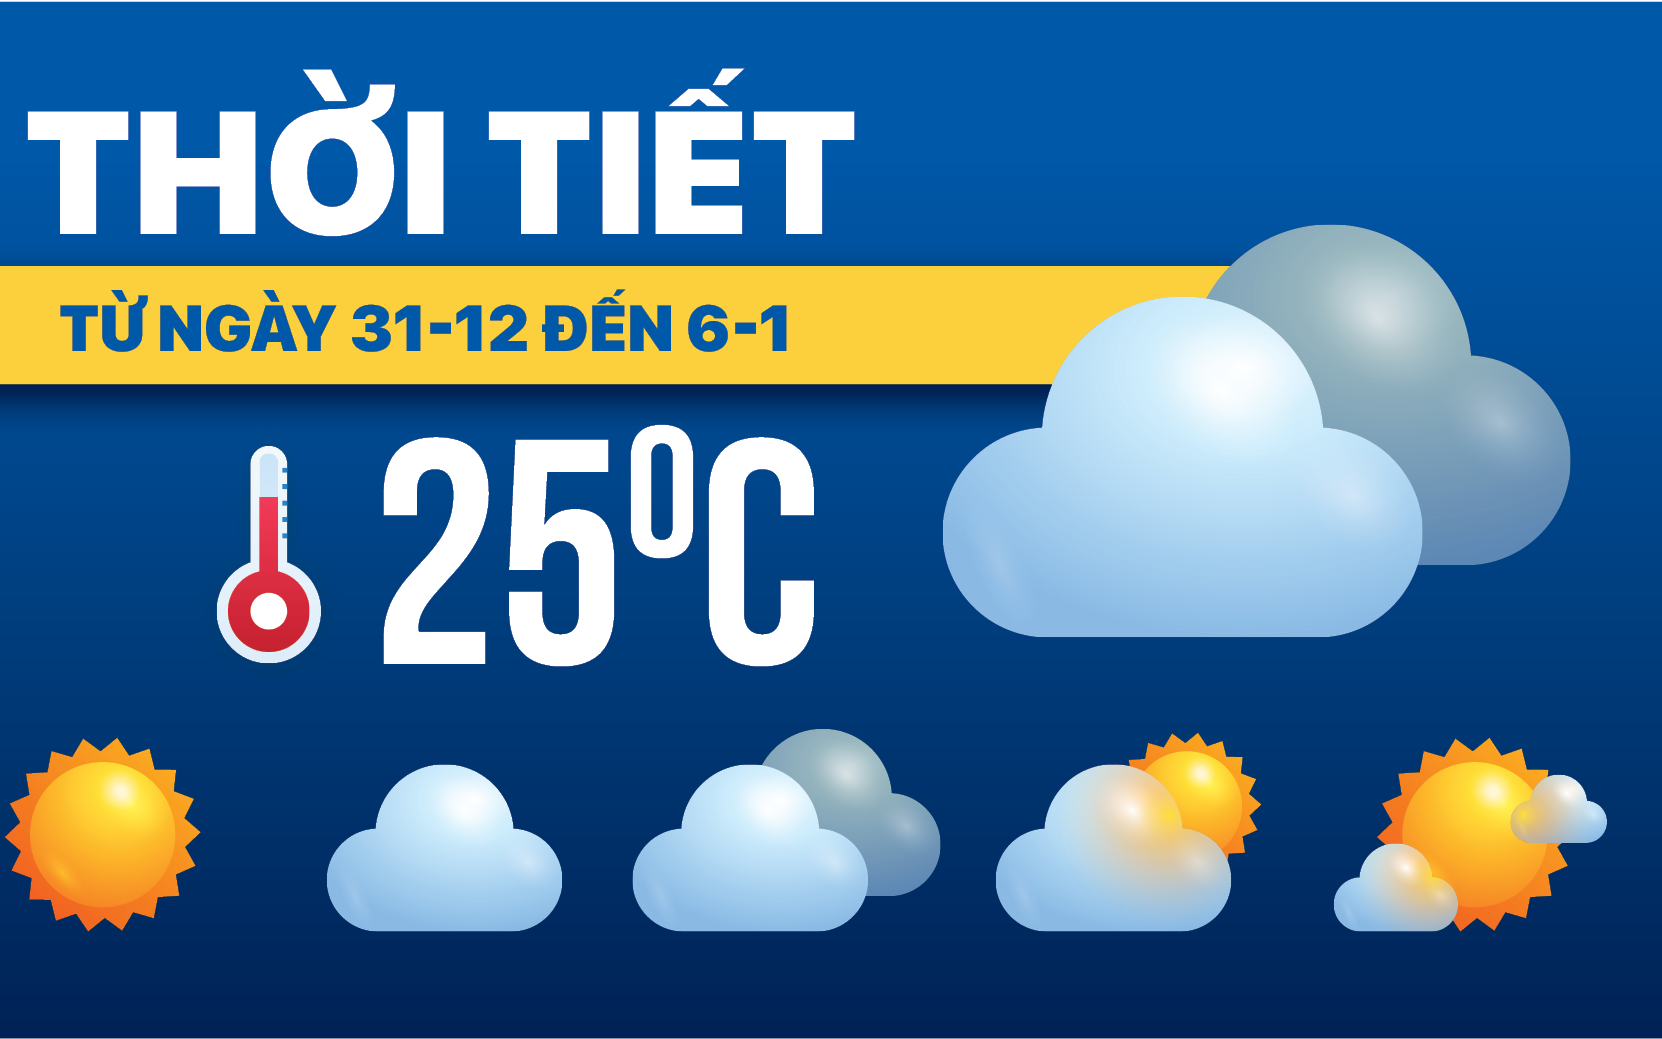 Dự báo thời tiết ngày 31-12 đến 6-1: Bắc Bộ rét, Trung Bộ mưa rào, Nam Bộ nắng nóng